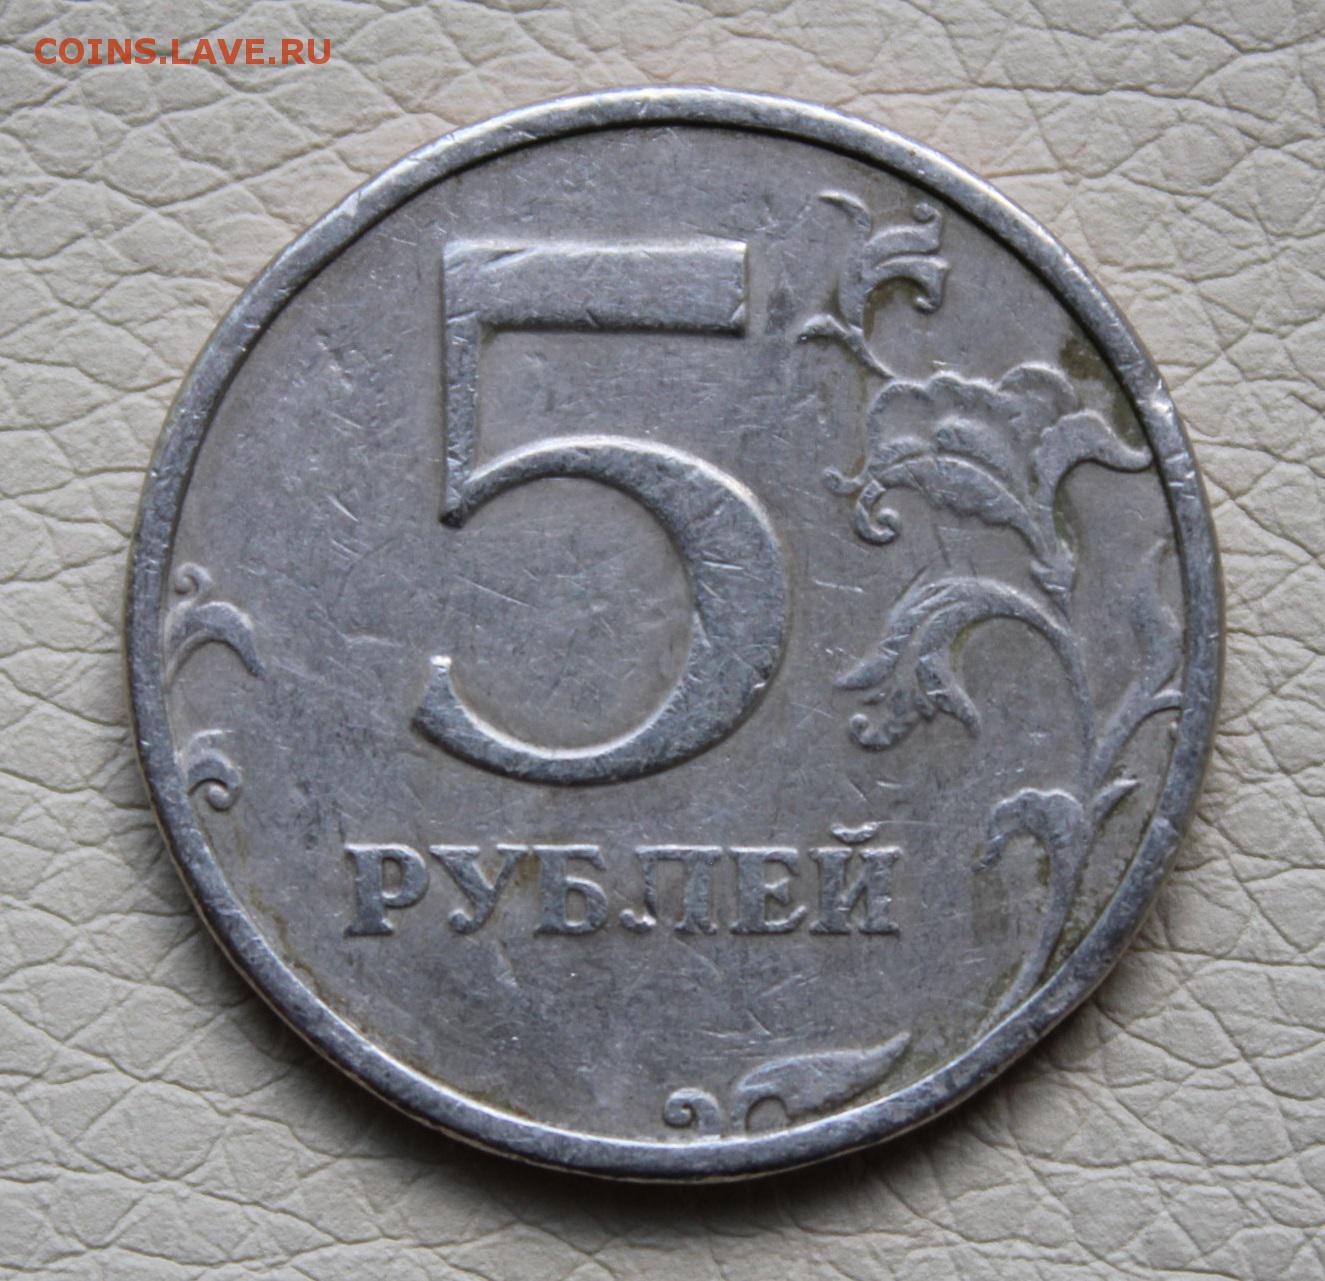 Продать монеты 5 рублей. 5 Рублей 1999 СПМД. 5 Рублей 1999 года Санкт-Петербургского монетного двора. Монета 5 рублей 1999 СПМД. 5 Рублей 1999.